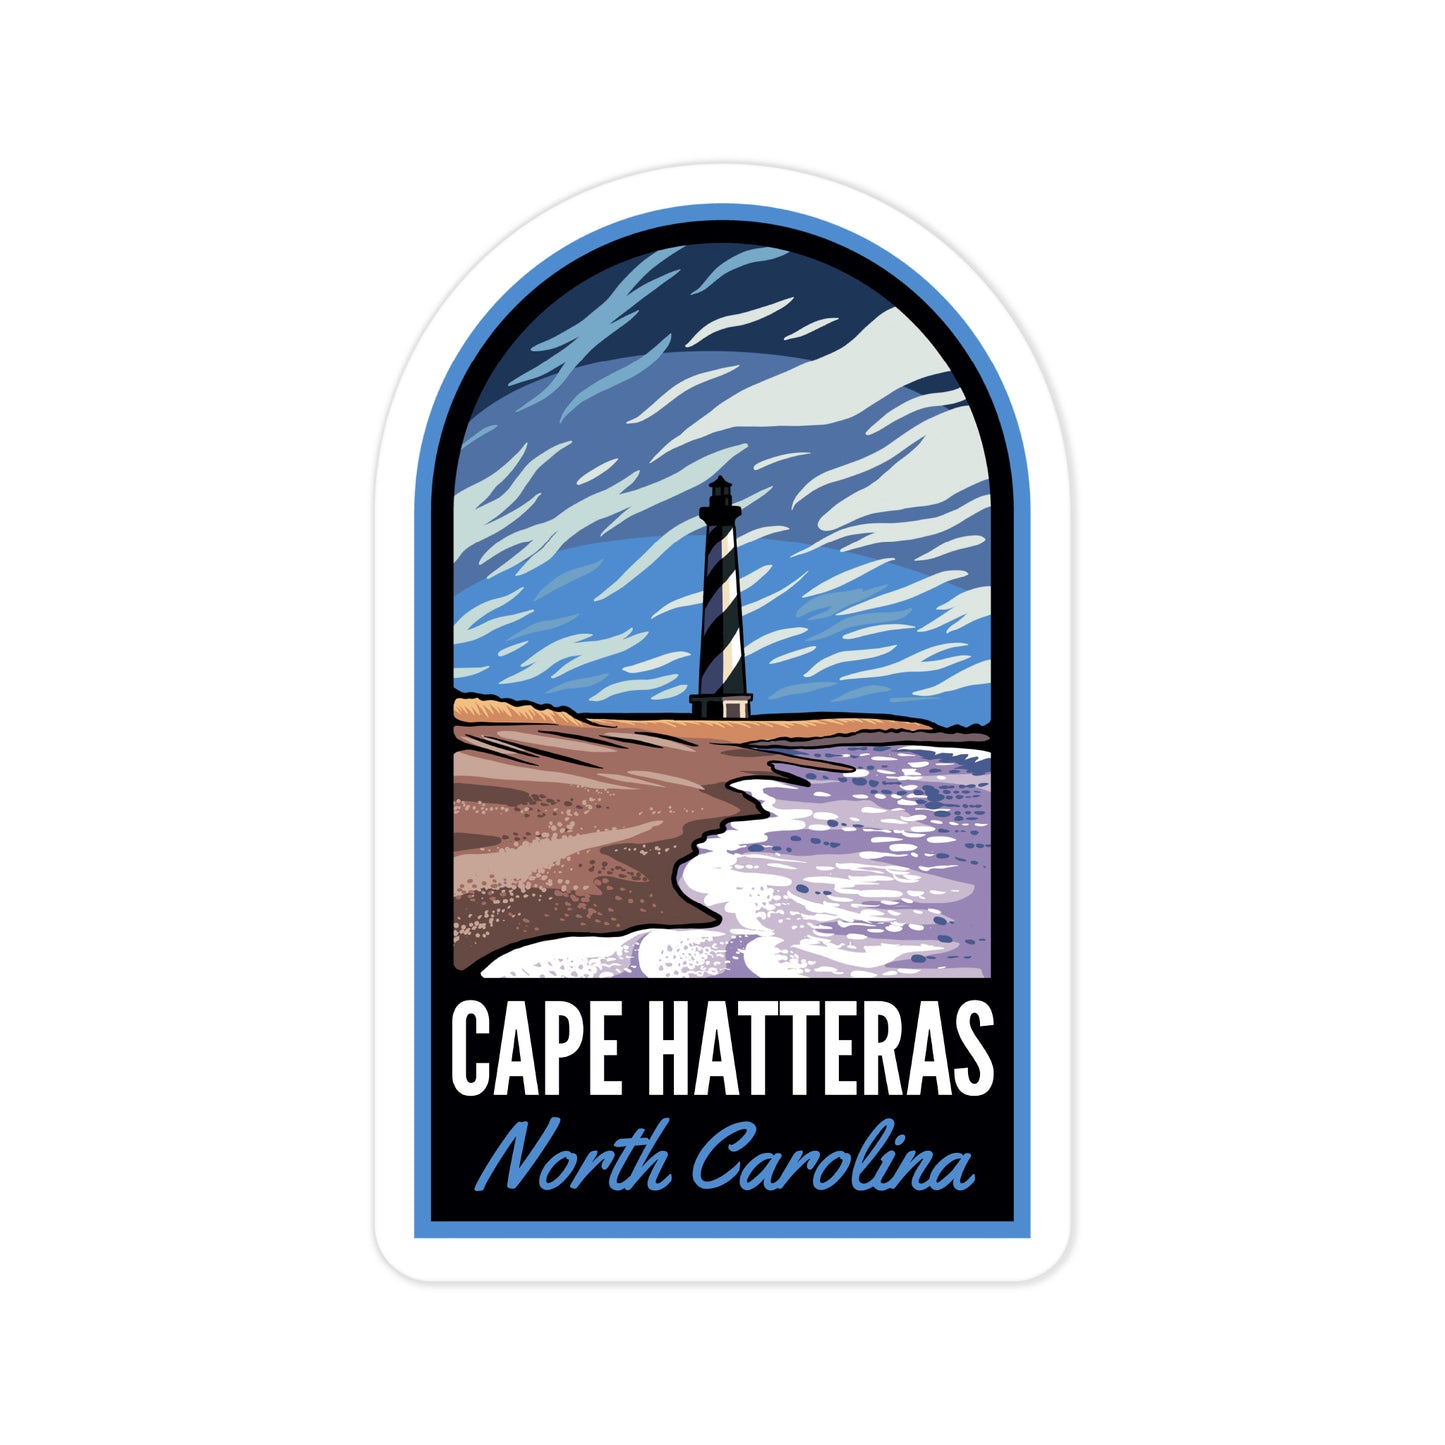 A sticker of Cape Hatteras North Carolina